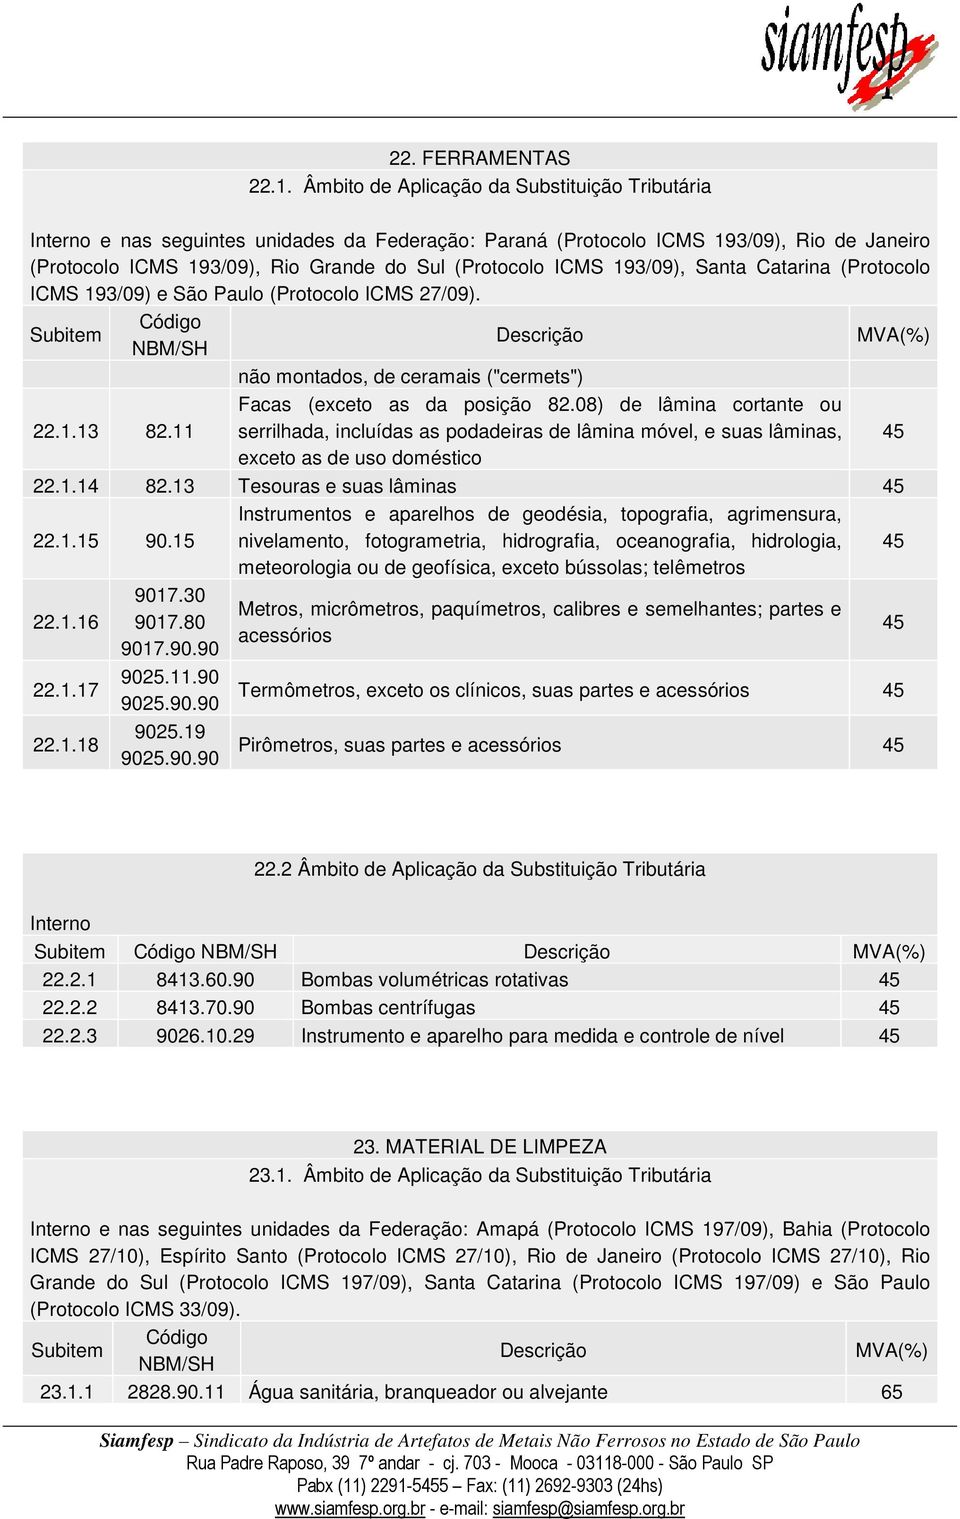 193/09), Santa Catarina (Protocolo ICMS 193/09) e São Paulo (Protocolo ICMS 27/09). não montados, de ceramais ("cermets") 22.1.13 82.11 Facas (exceto as da posição 82.